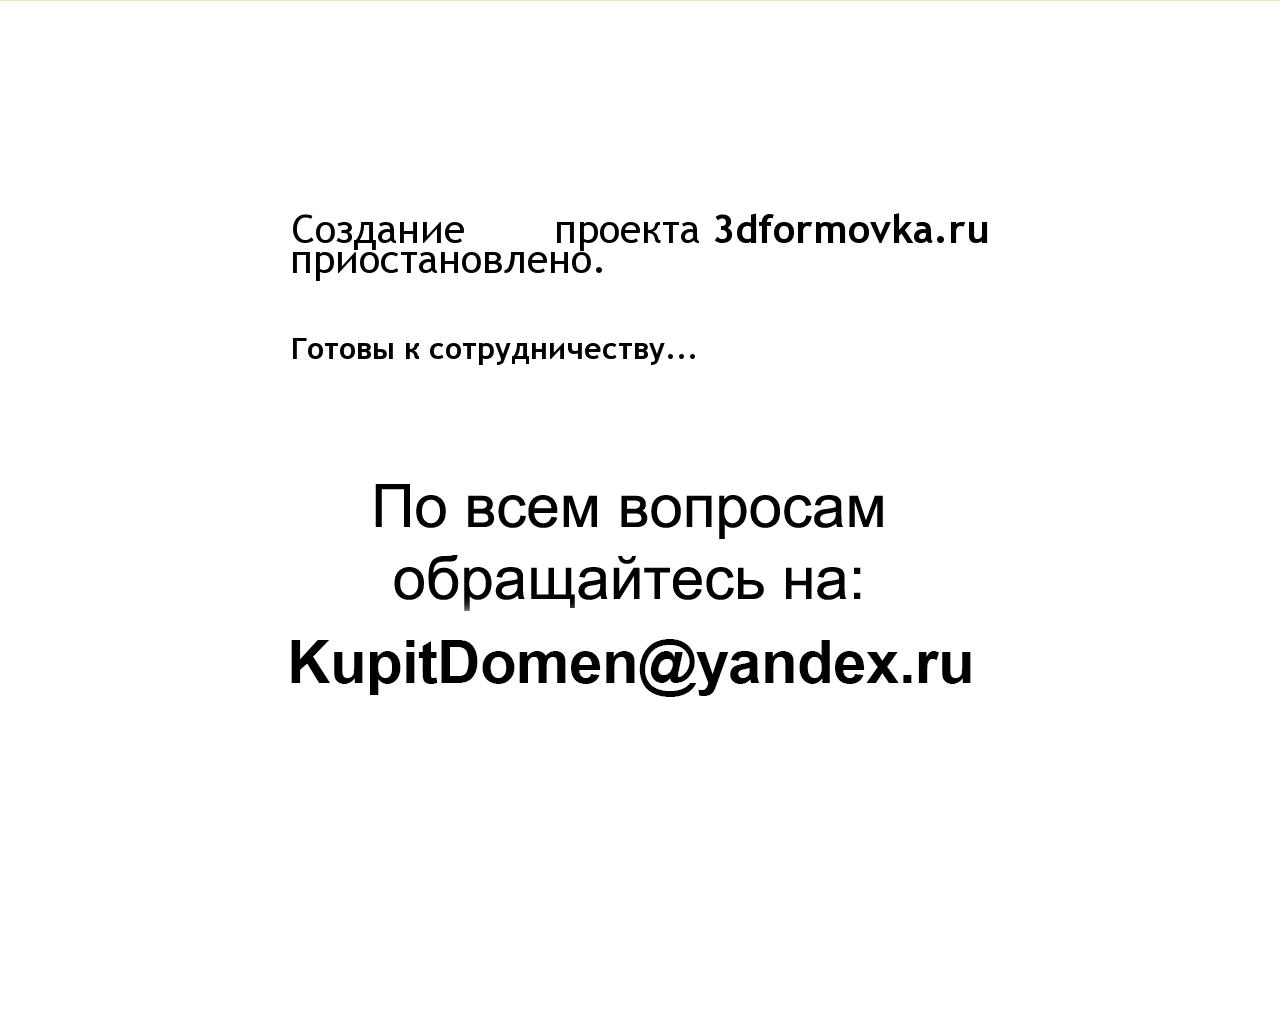 Изображение сайта 3dformovka.ru в разрешении 1280x1024